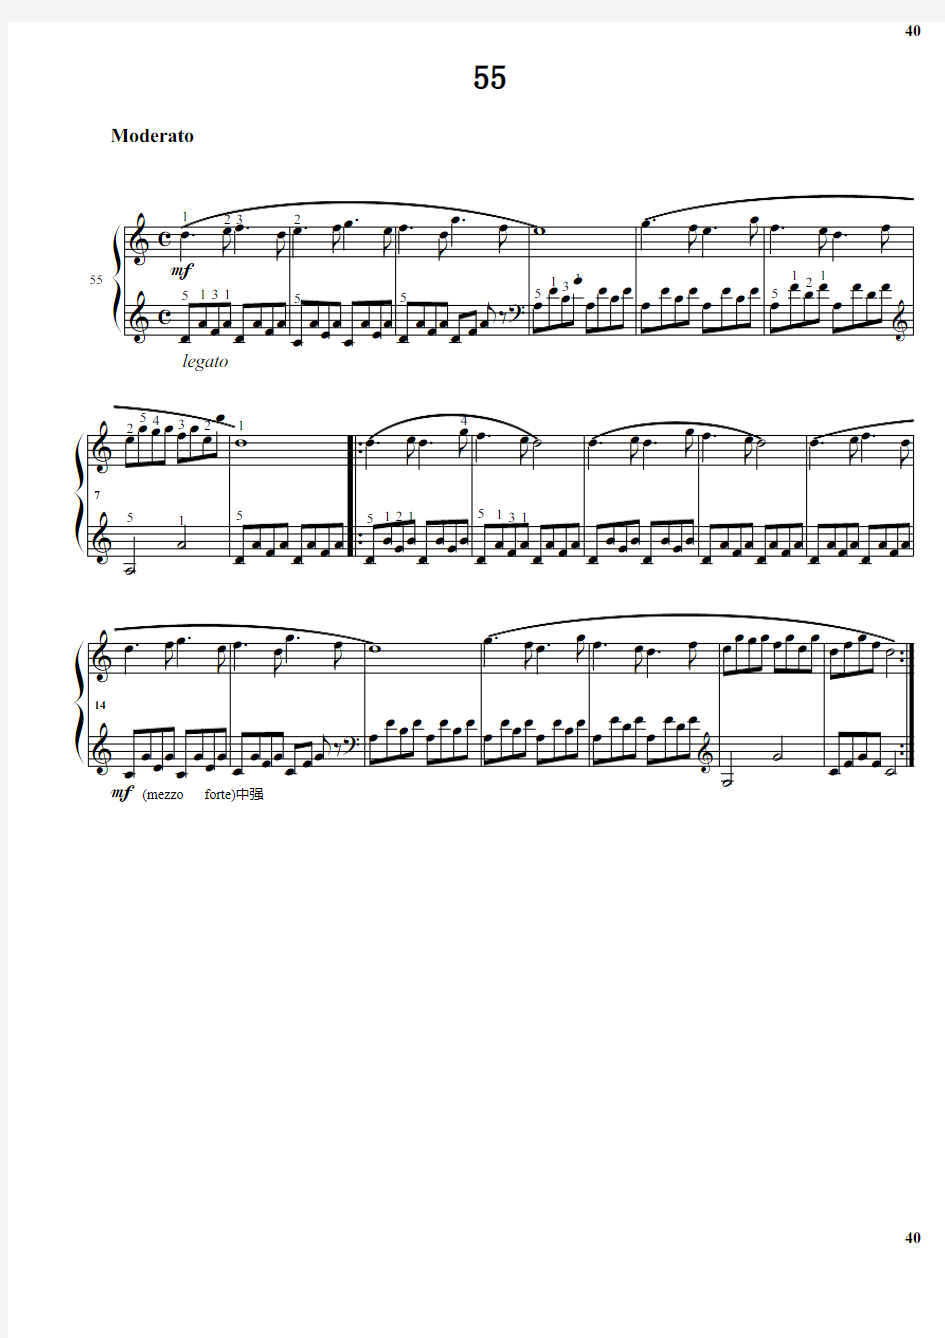 拜厄钢琴基本教程 第1阶段.55 原版 正谱 五线谱 钢琴谱